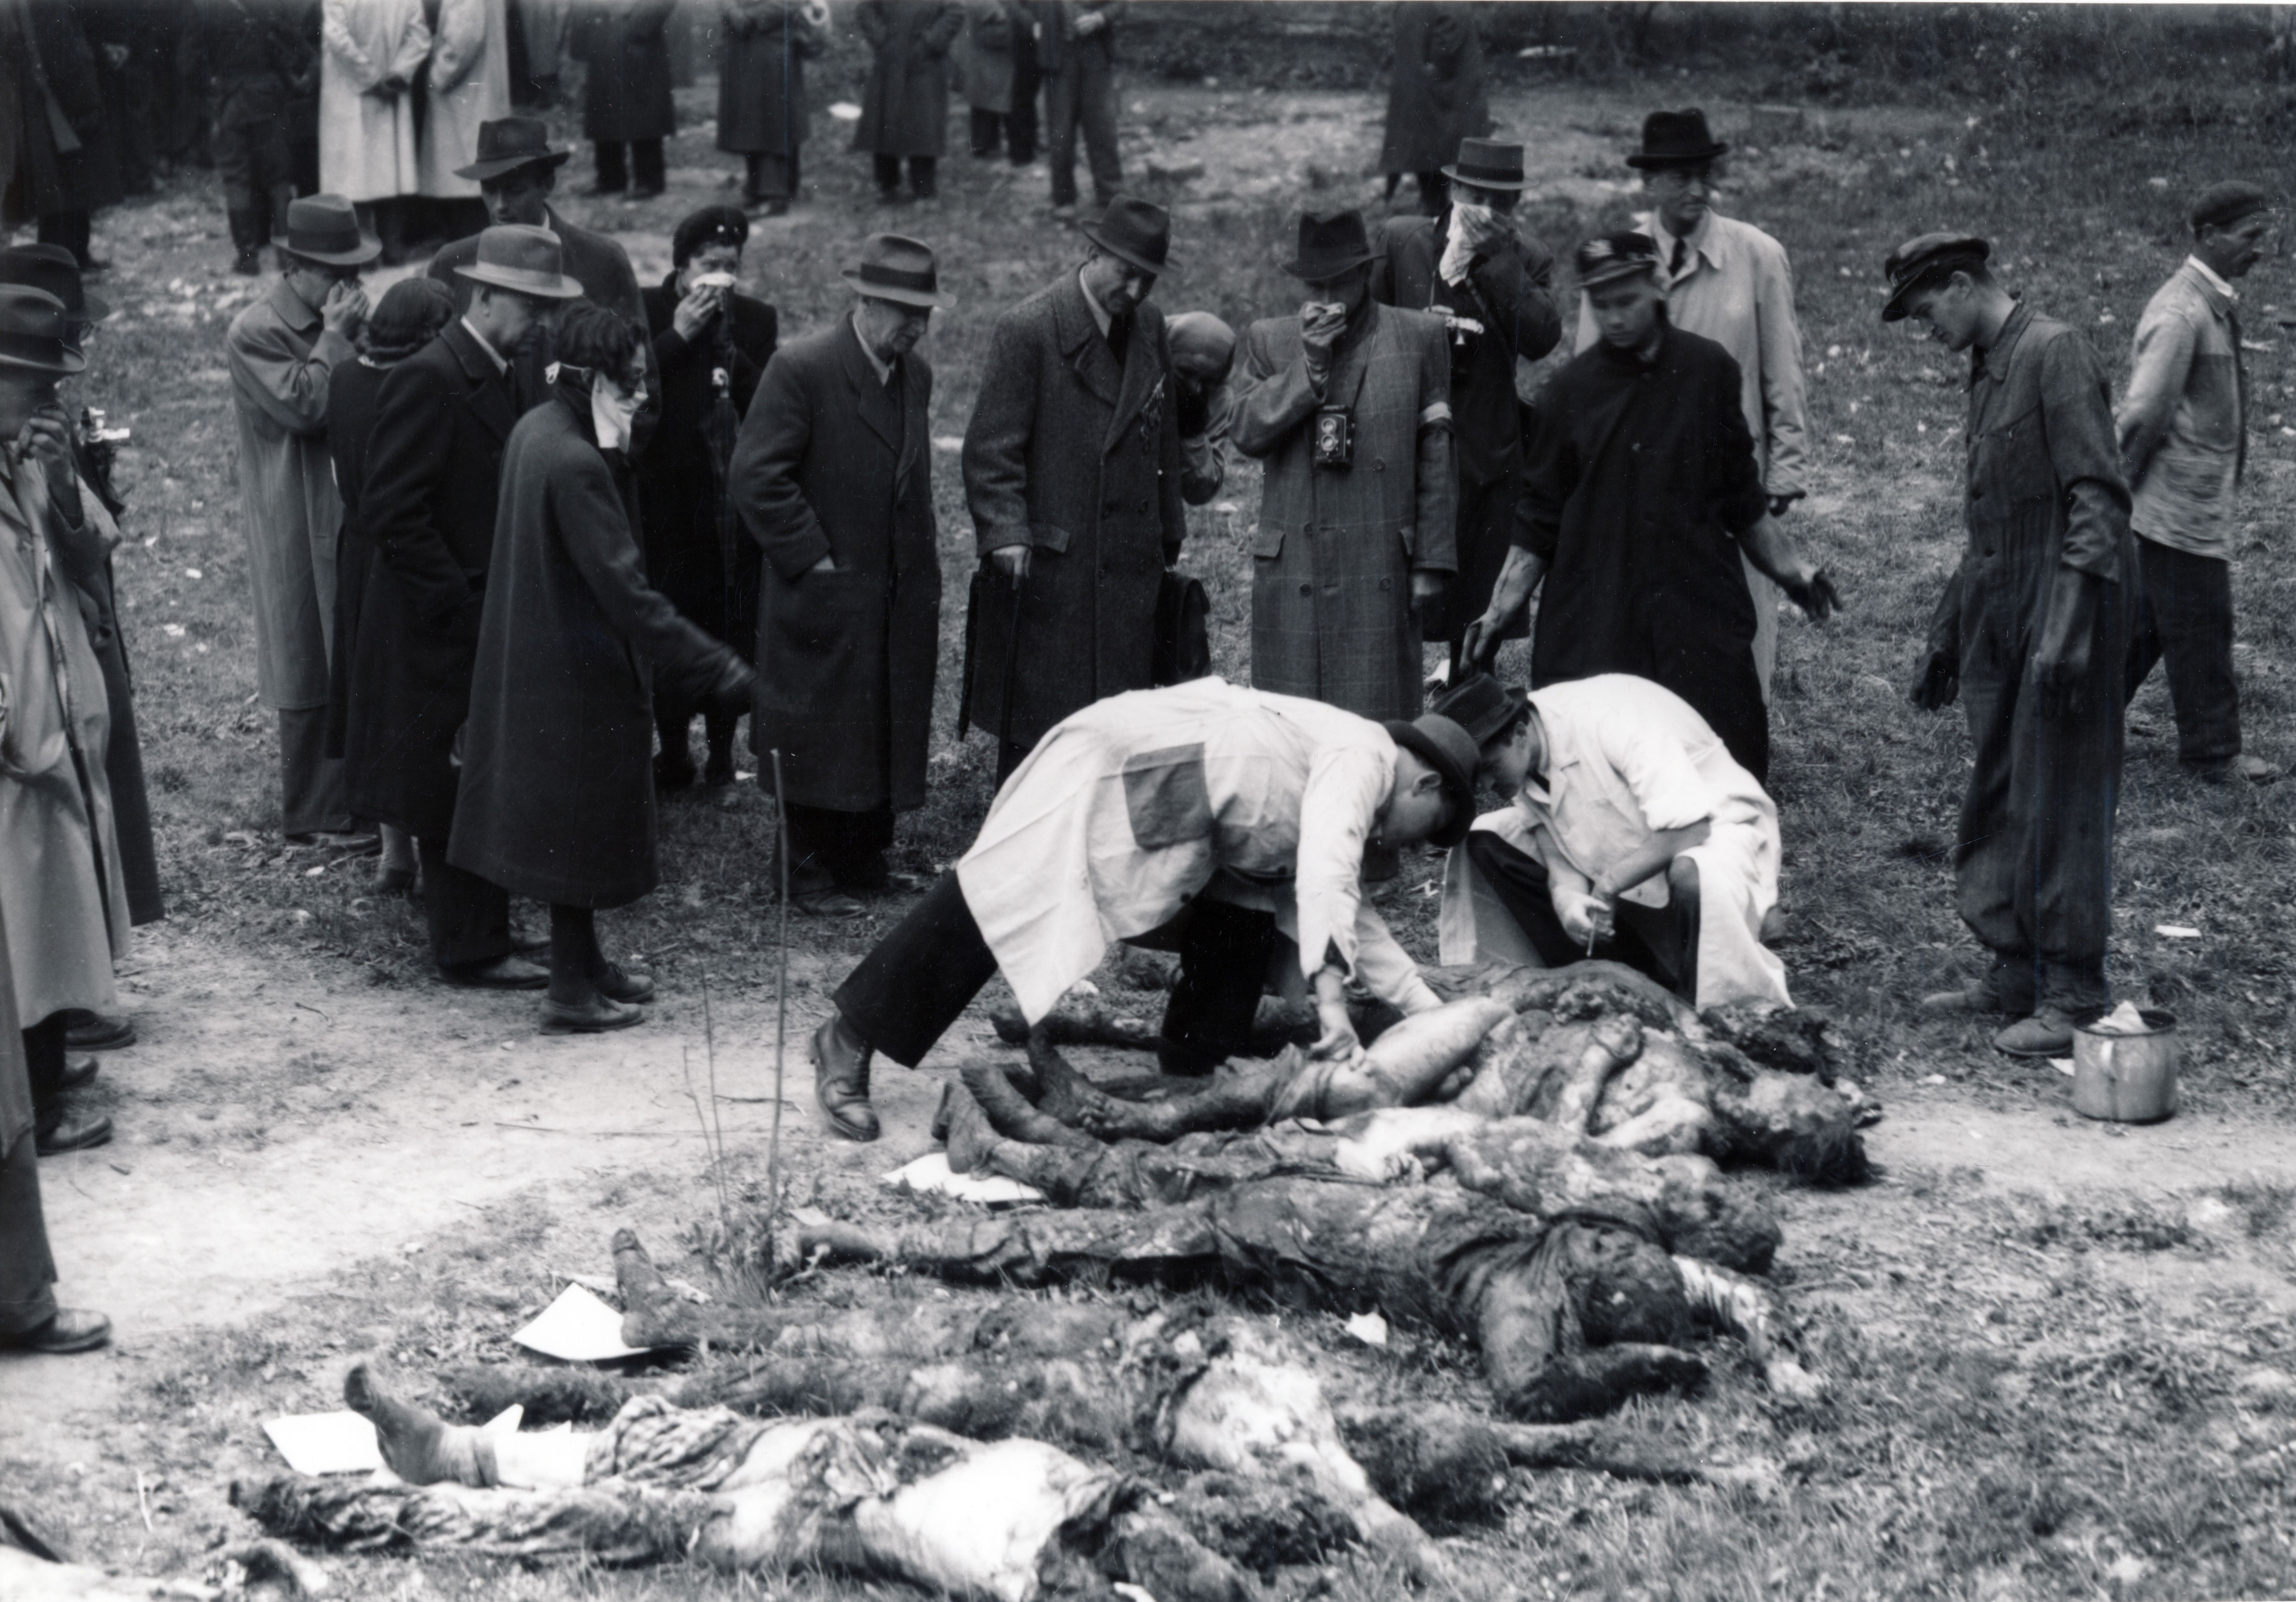 A Maros utca 16. szám alatti zsidó kórház udvara. A felvétel az áldozatok exhumálása során készült, 1945. április 3-án.